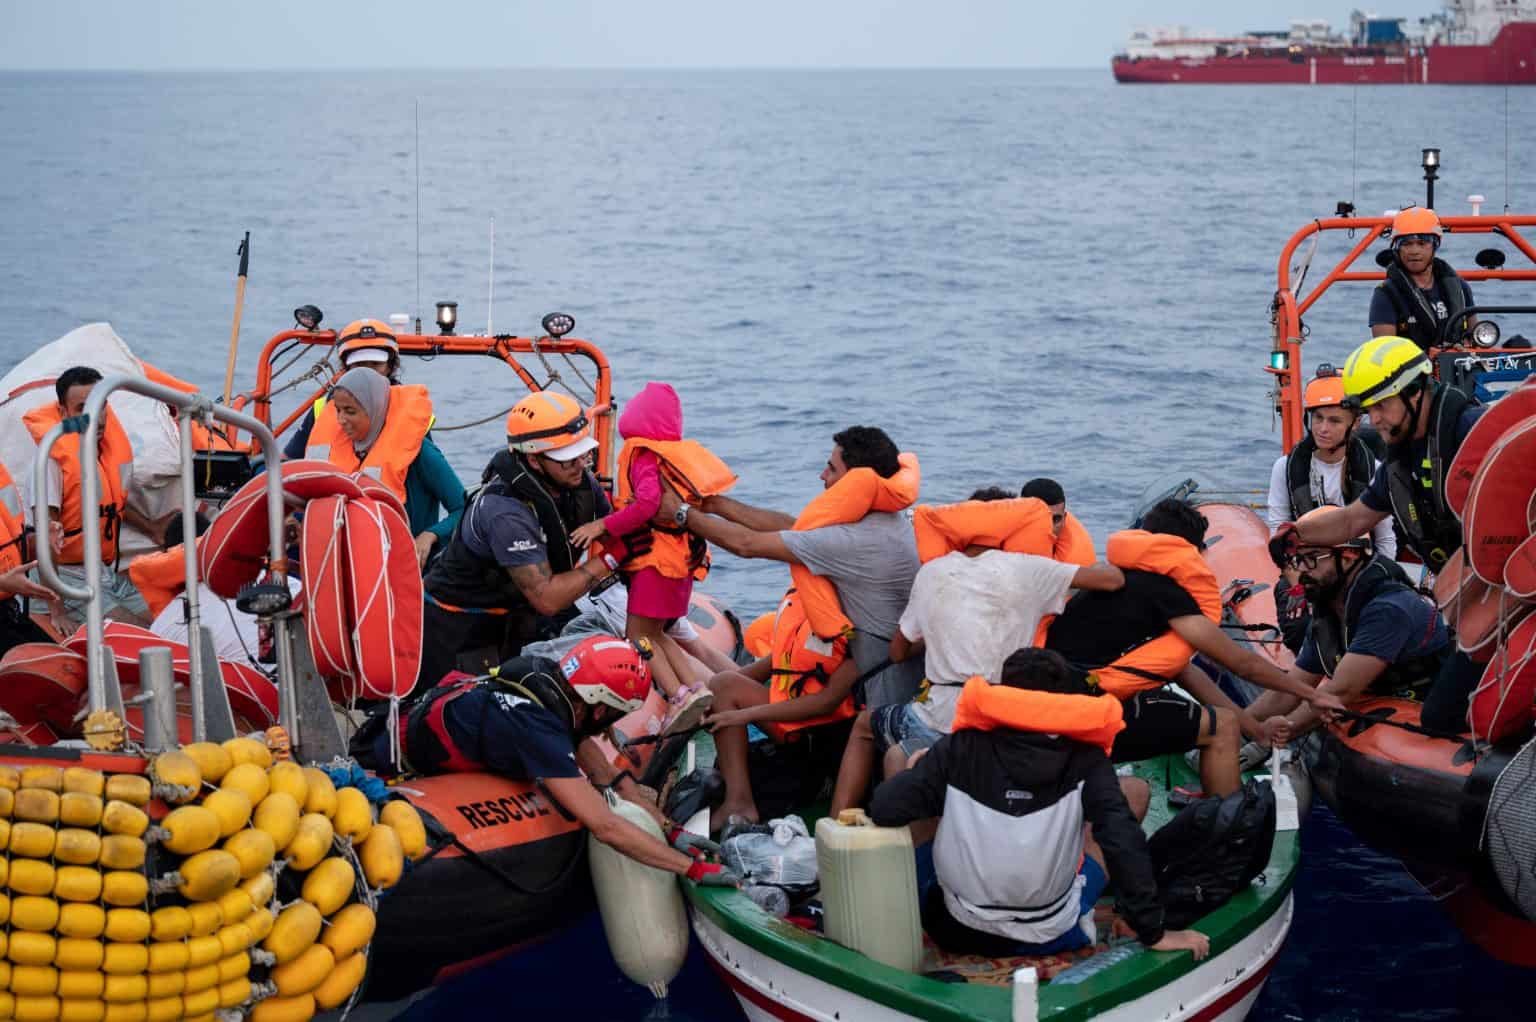 La tragedia non si ferma: richiesto l’aumento dei mezzi di soccorso nel Mediterraneo centrale